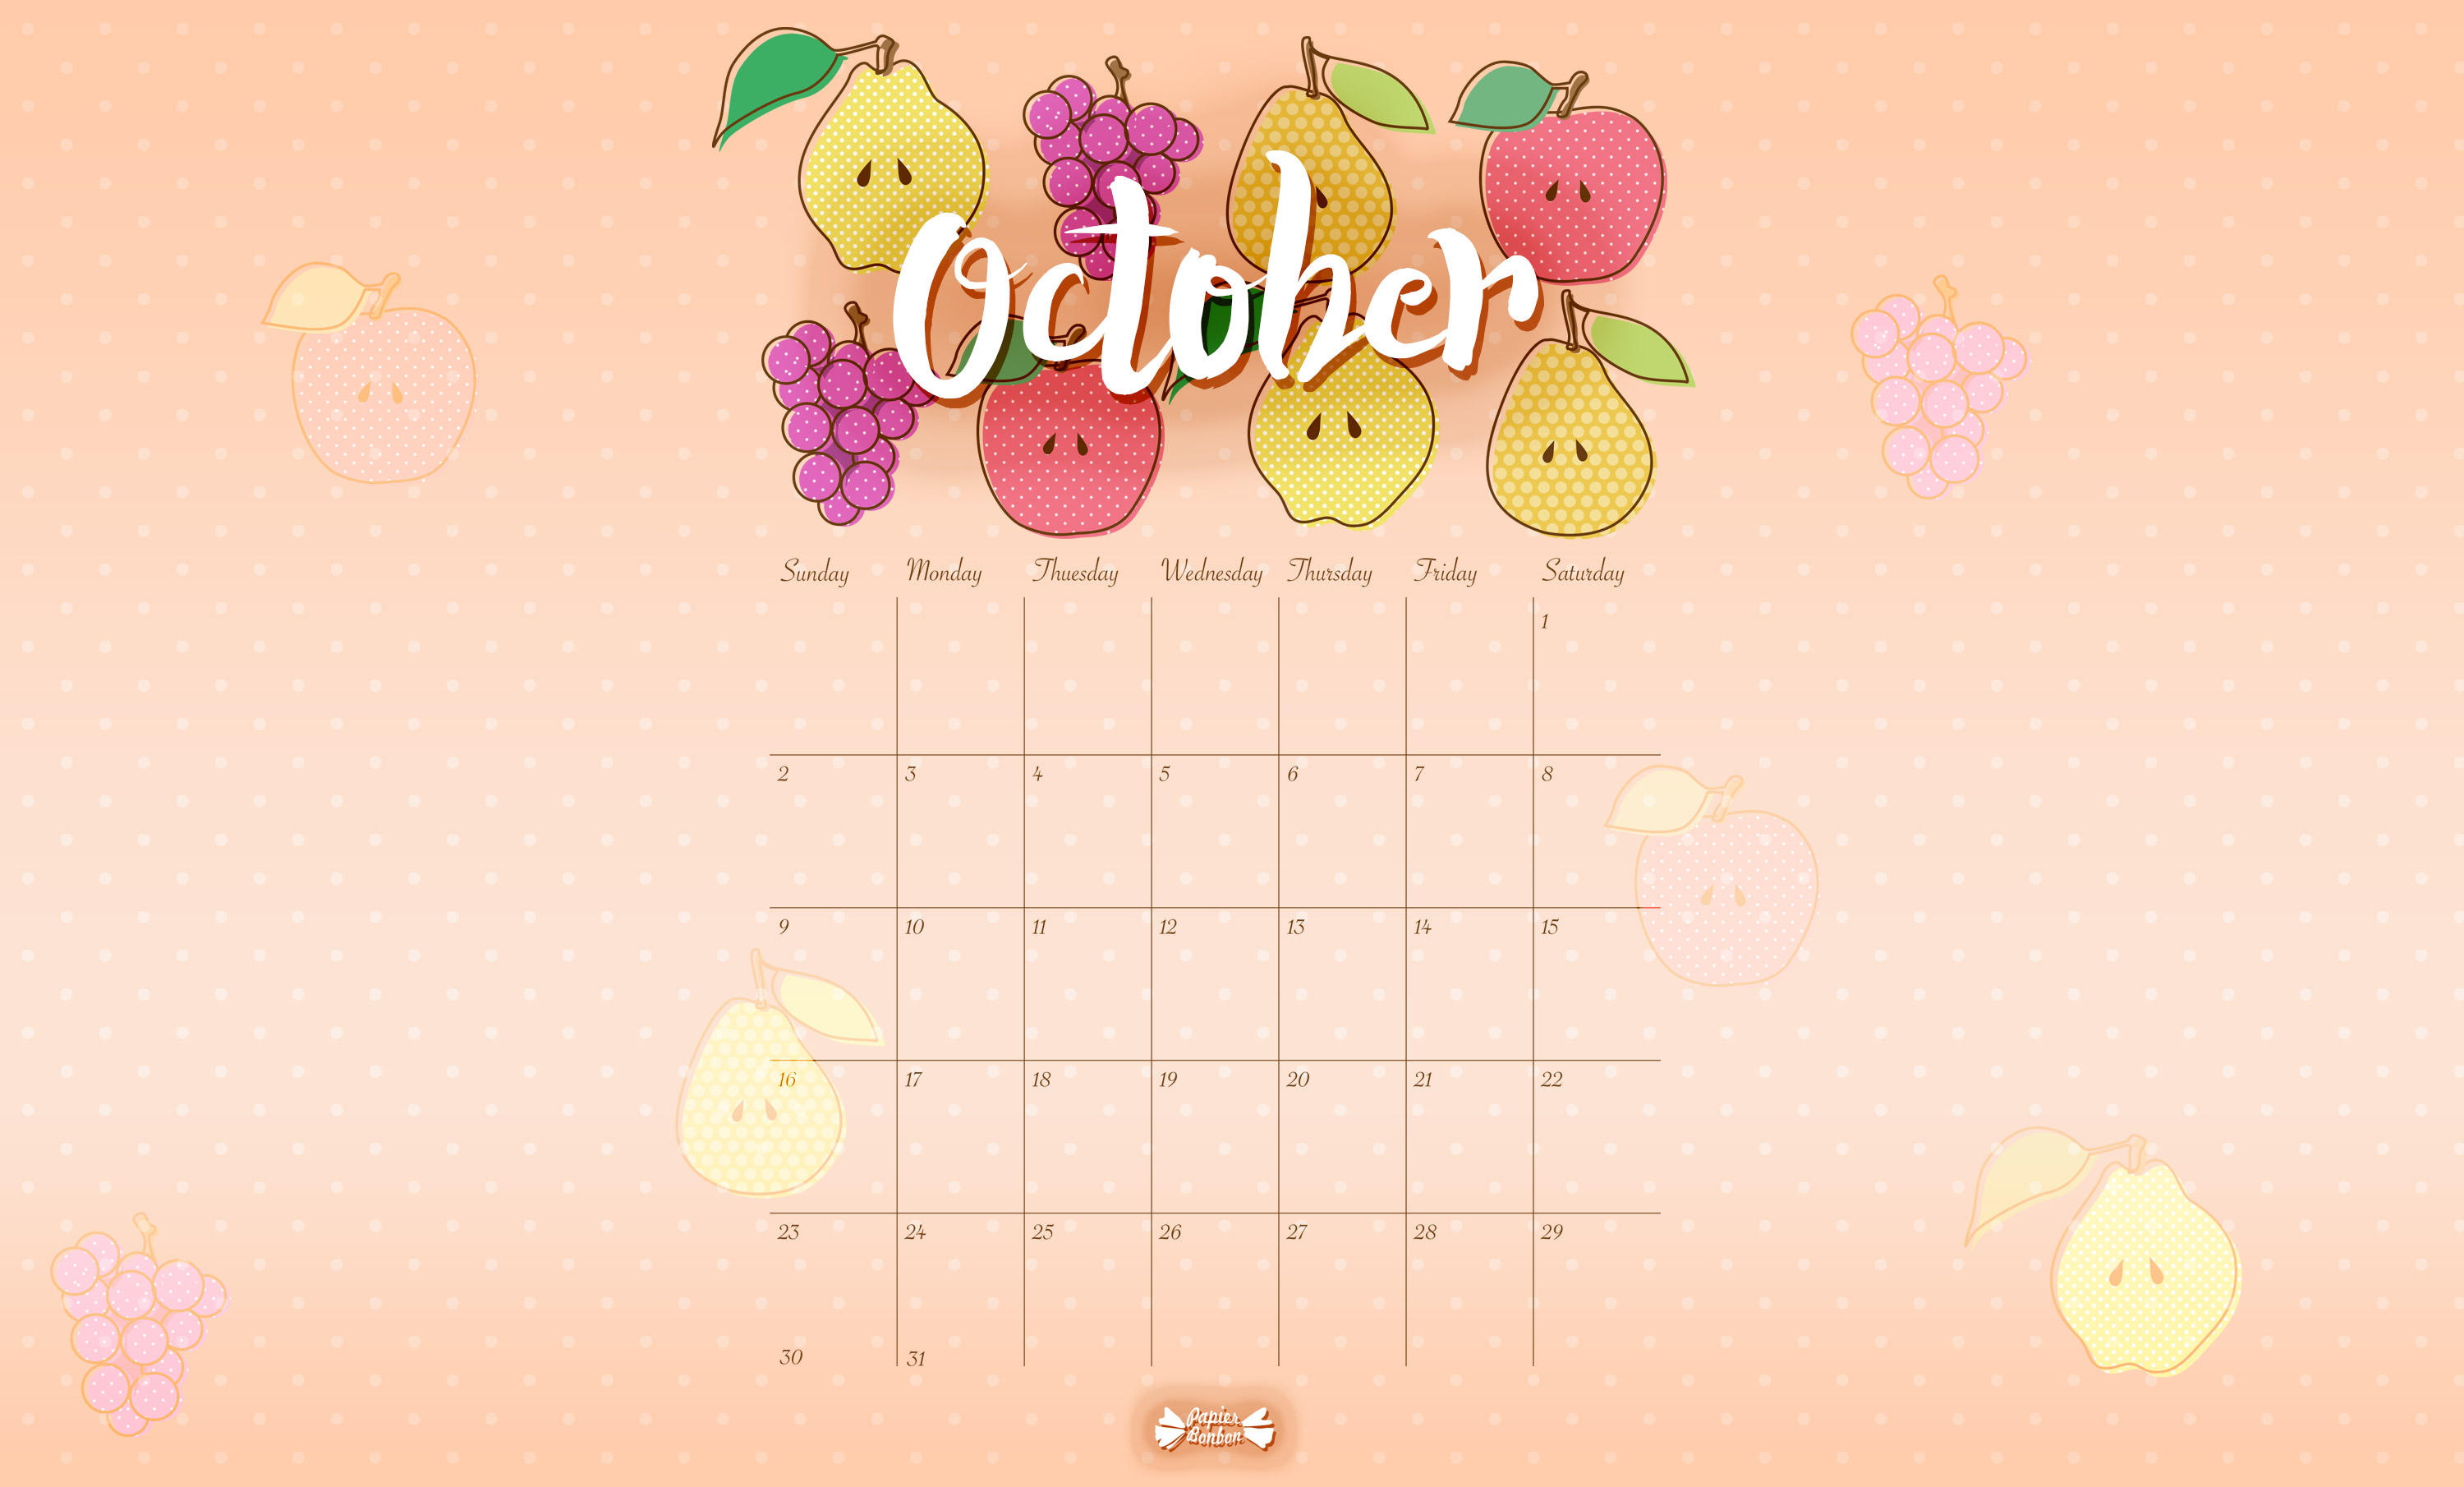 October Calendar Wallpaper - October Calendar 2018 Desktop , HD Wallpaper & Backgrounds